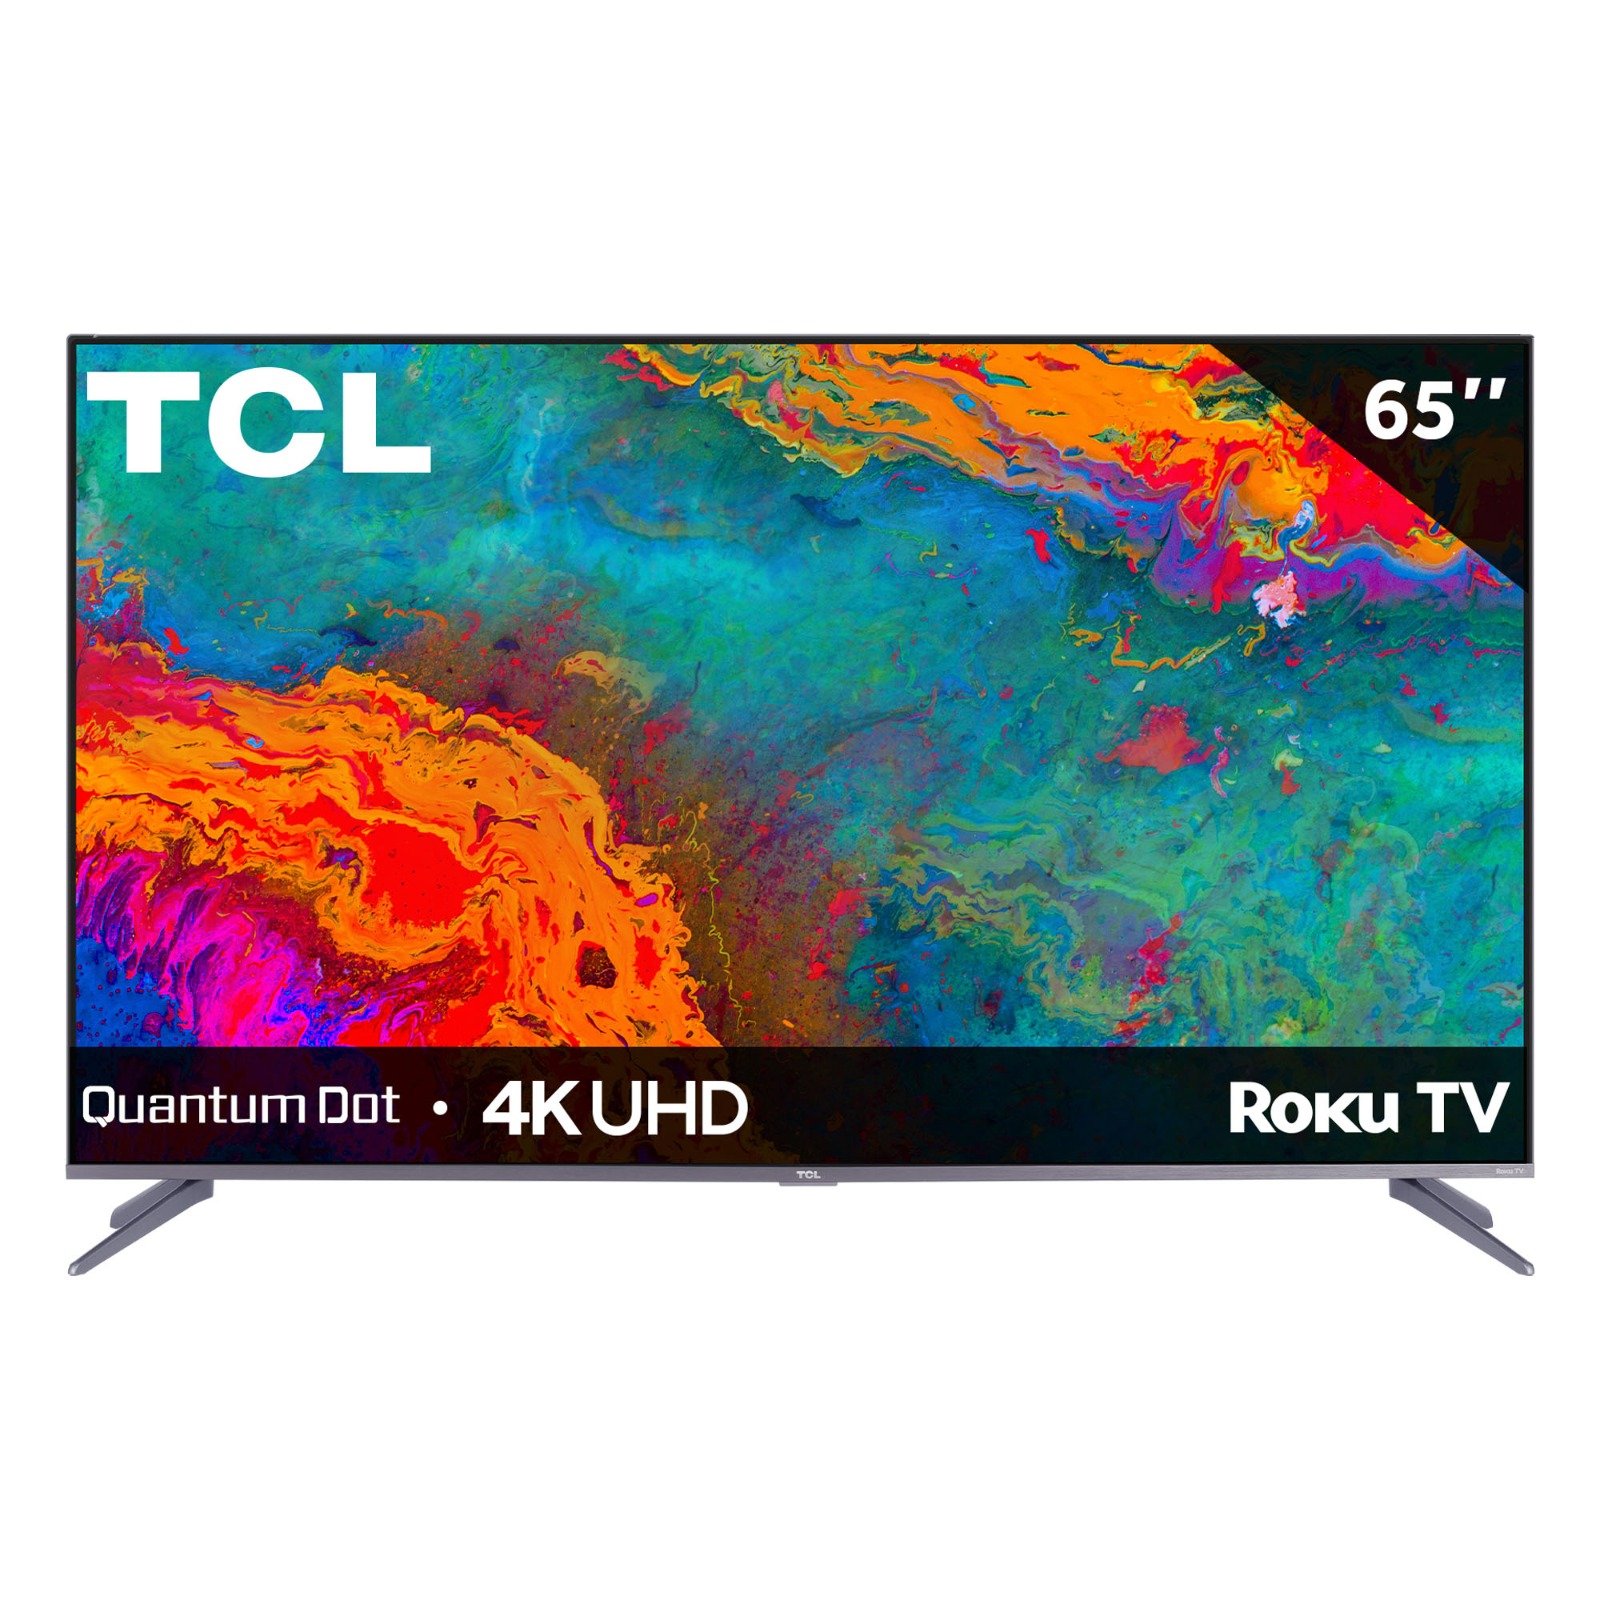 Samsung QLED, el televisor 4K de 65 pulgadas con un 41% de descuento